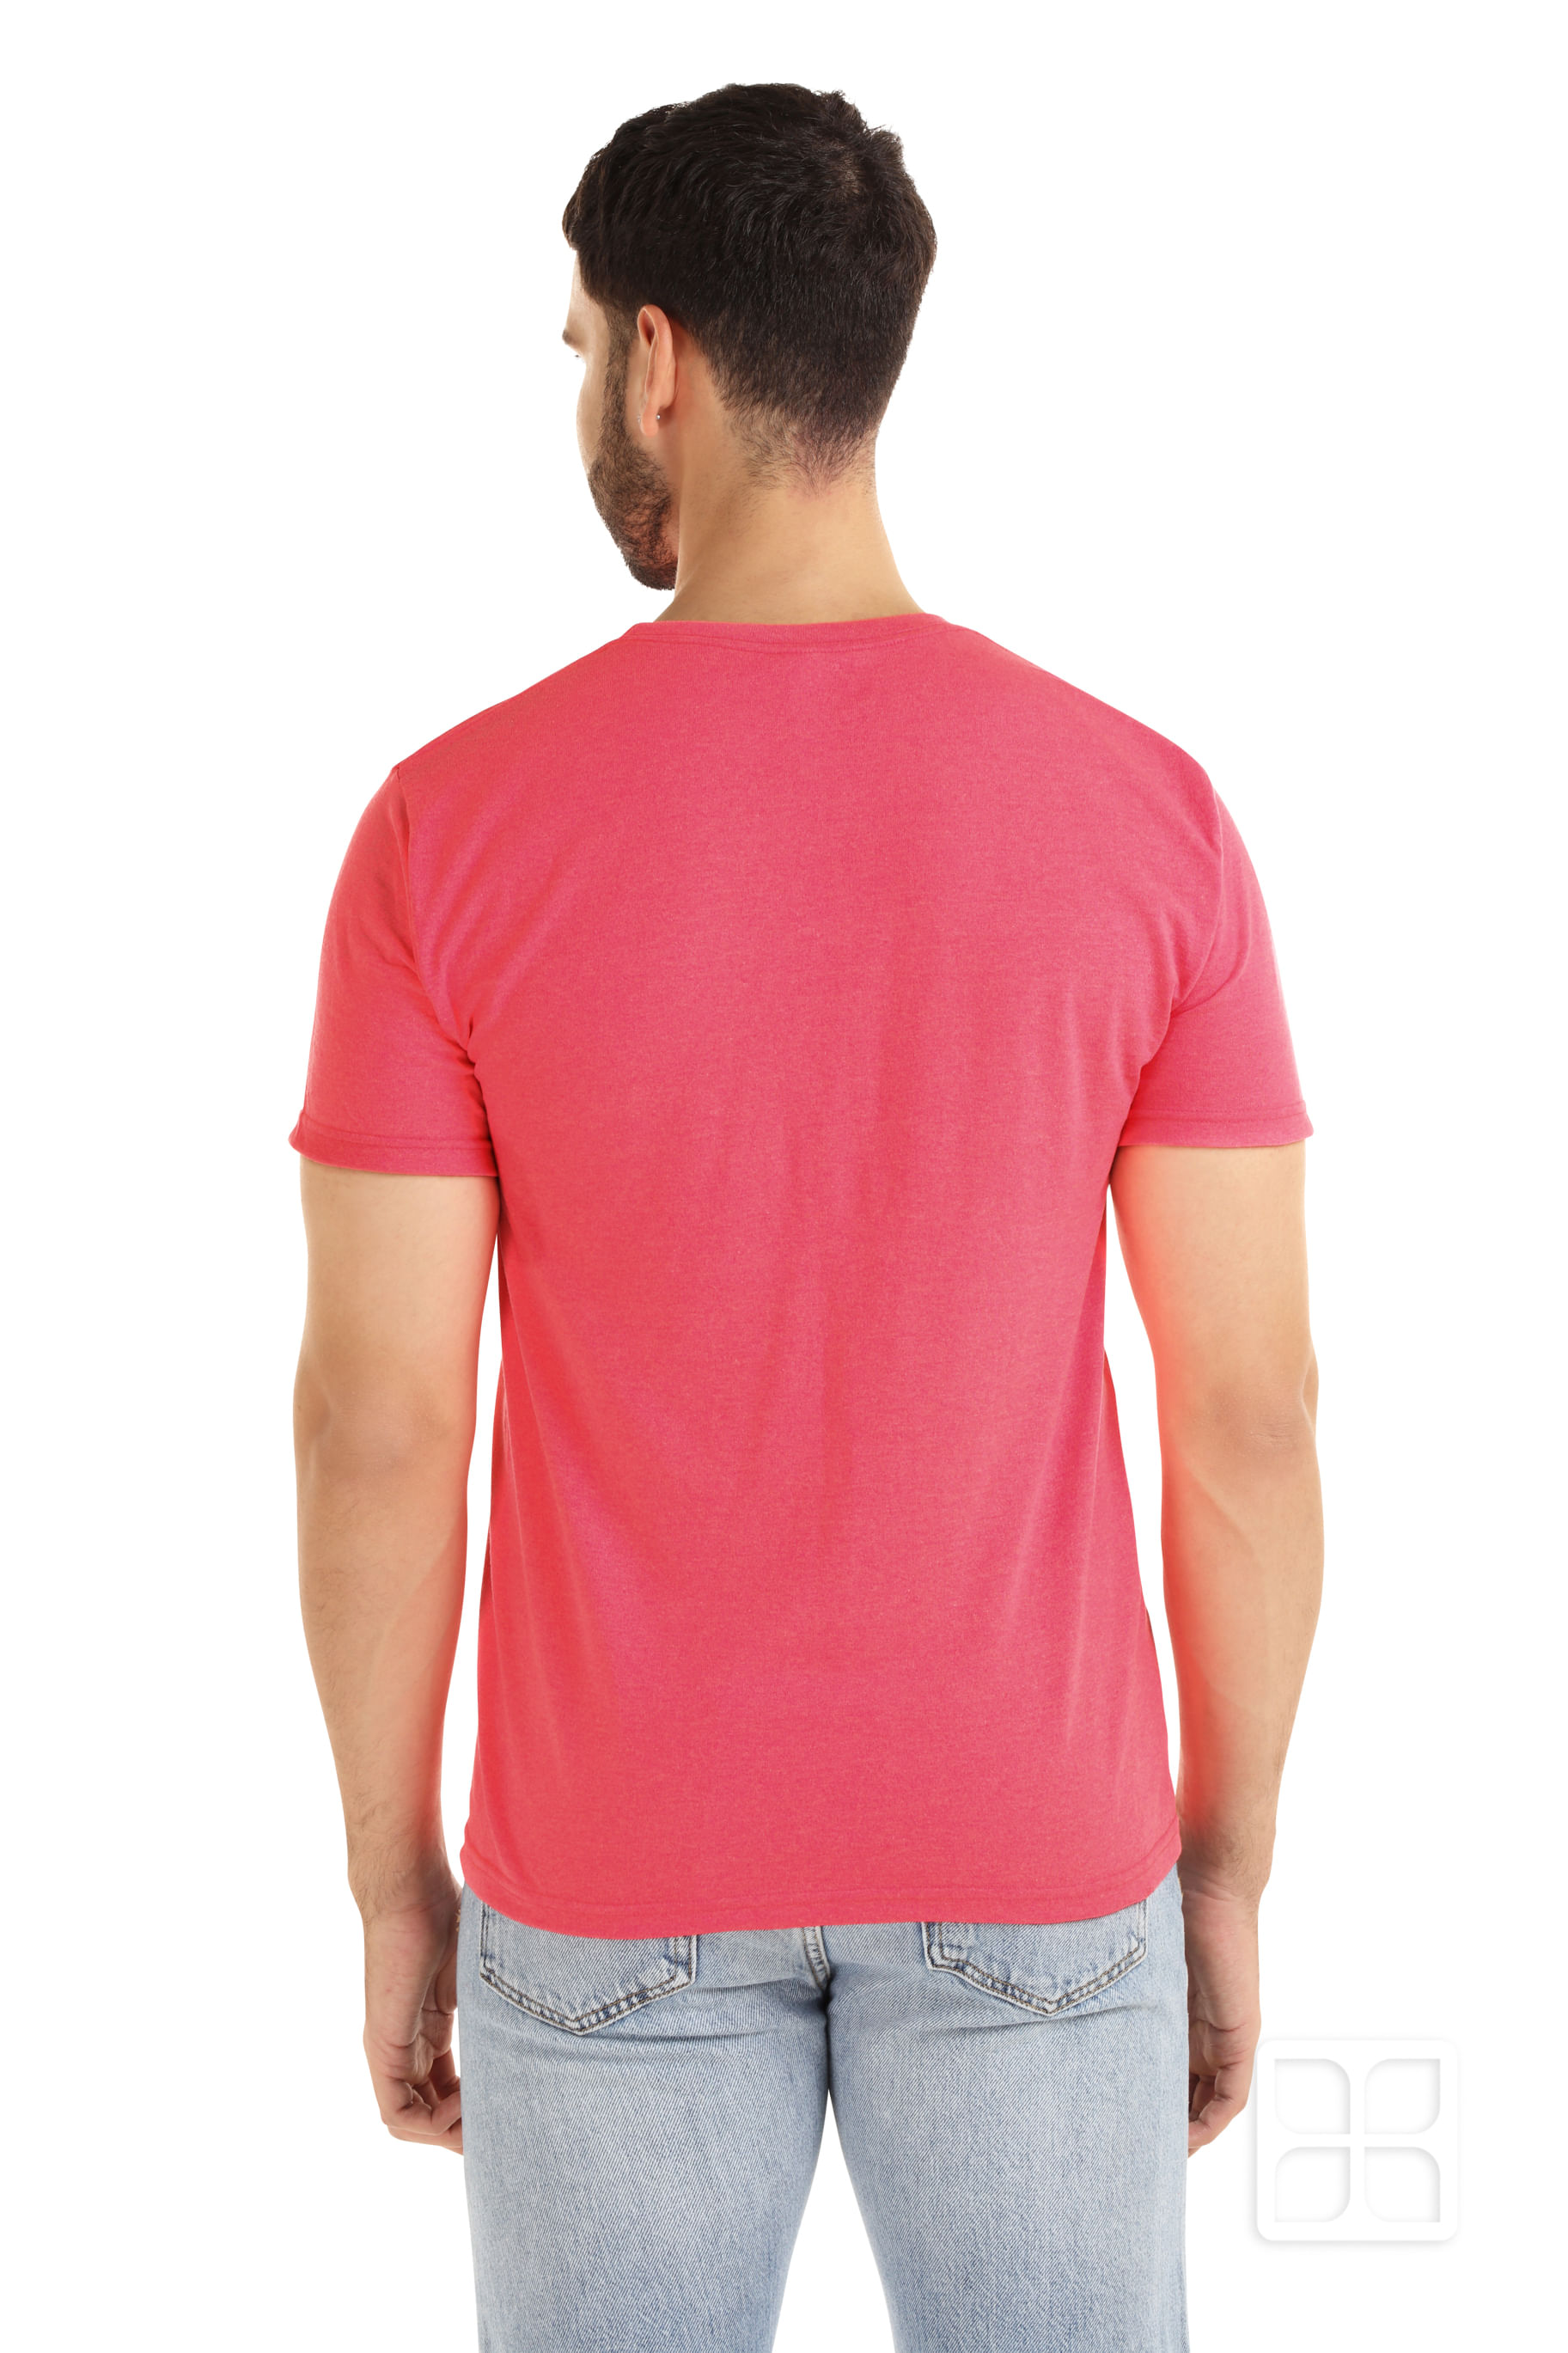  Camisetas para hombre de manga corta ajustada de algodón con  cuello redondo, camiseta atlética para correr, manga corta, transpirable,  Rosado : Ropa, Zapatos y Joyería